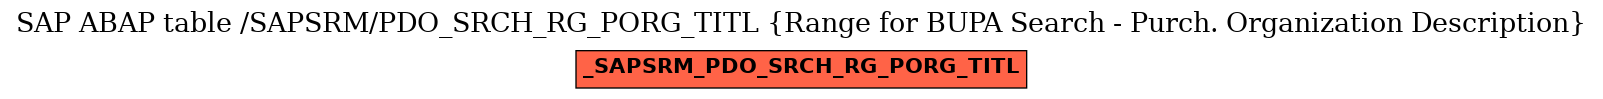 E-R Diagram for table /SAPSRM/PDO_SRCH_RG_PORG_TITL (Range for BUPA Search - Purch. Organization Description)